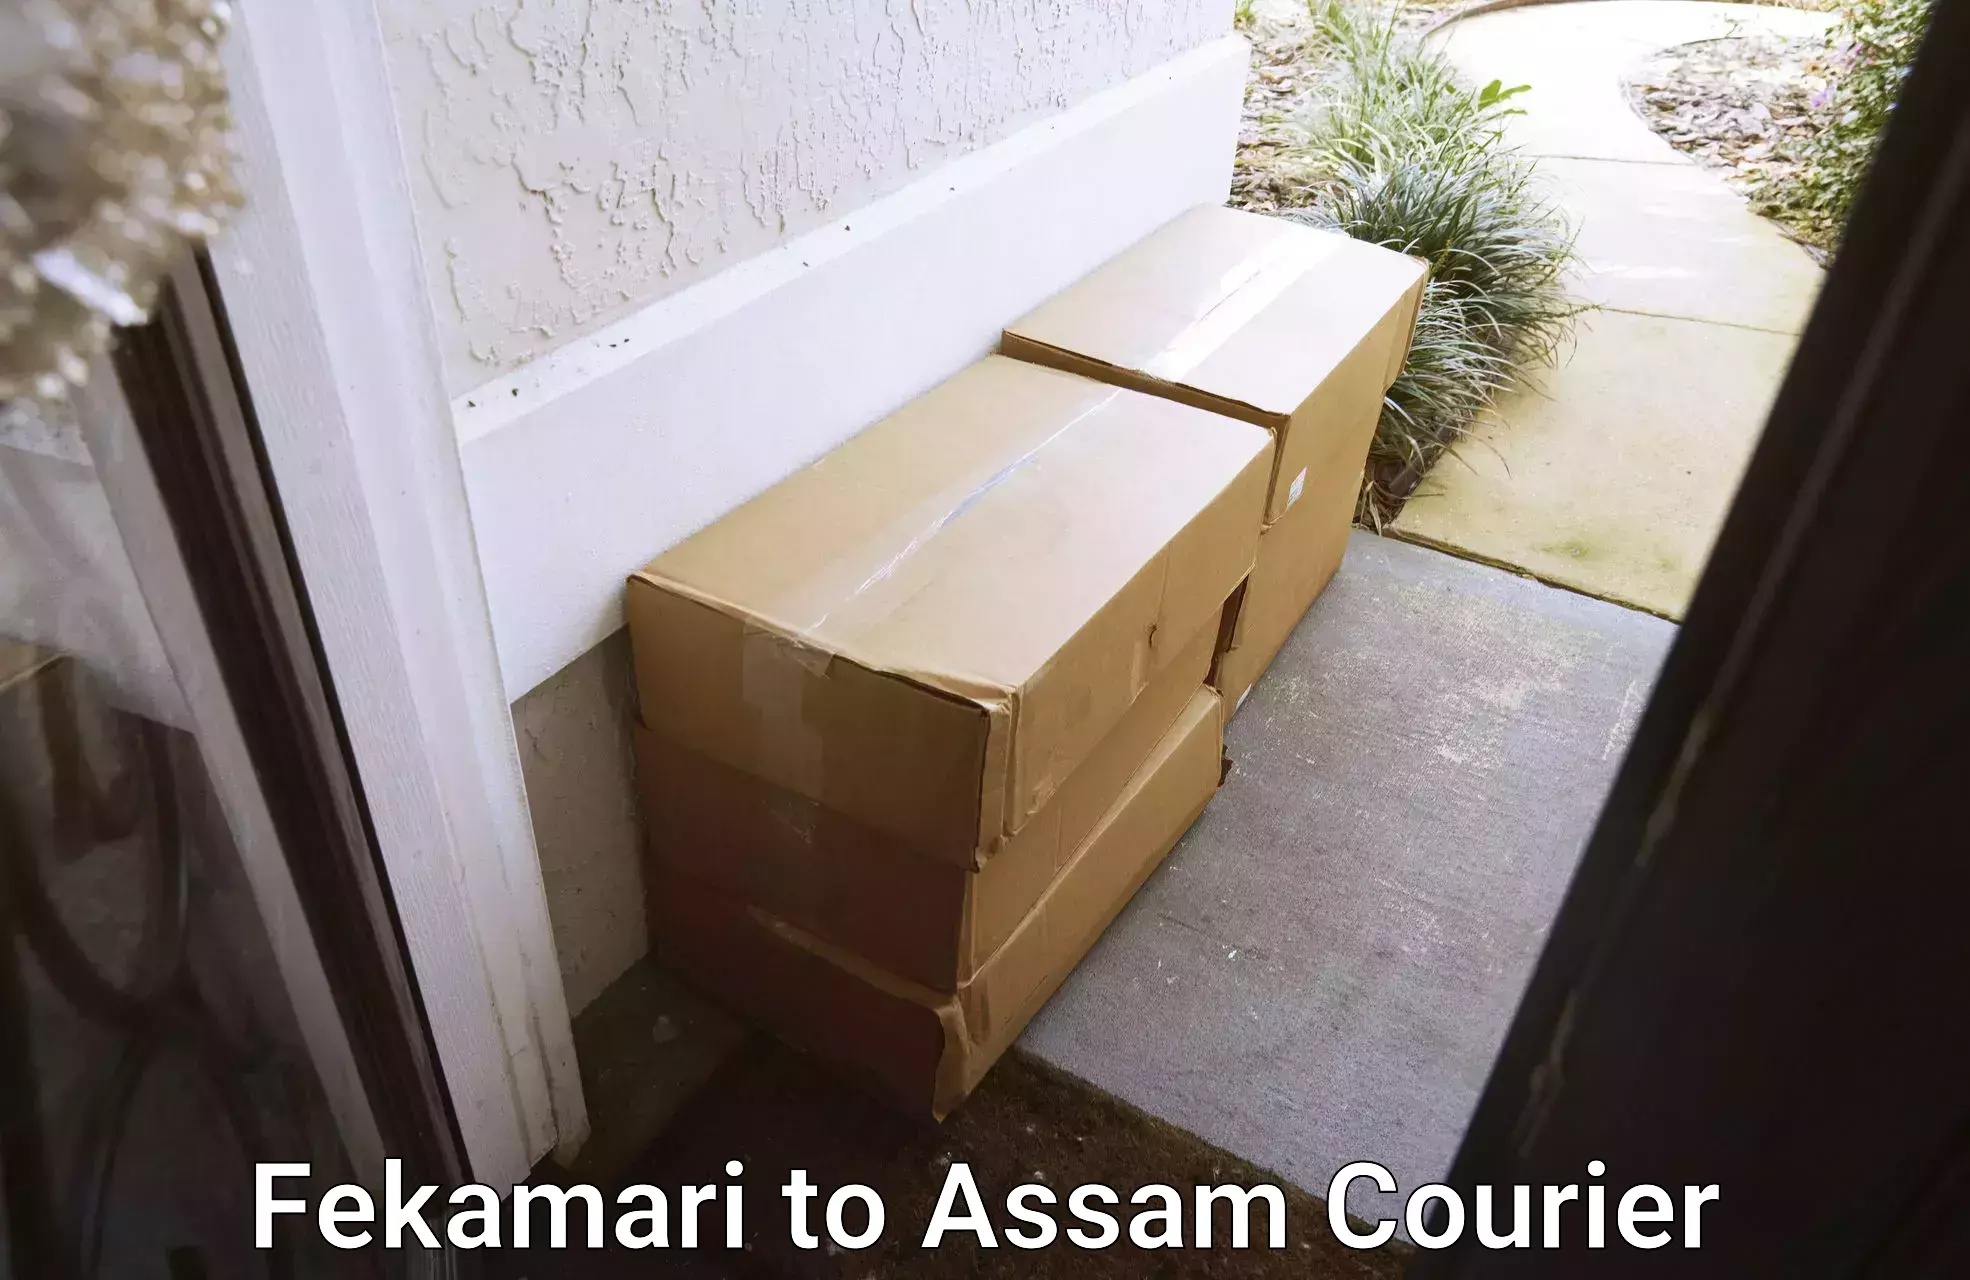 International courier networks Fekamari to Assam